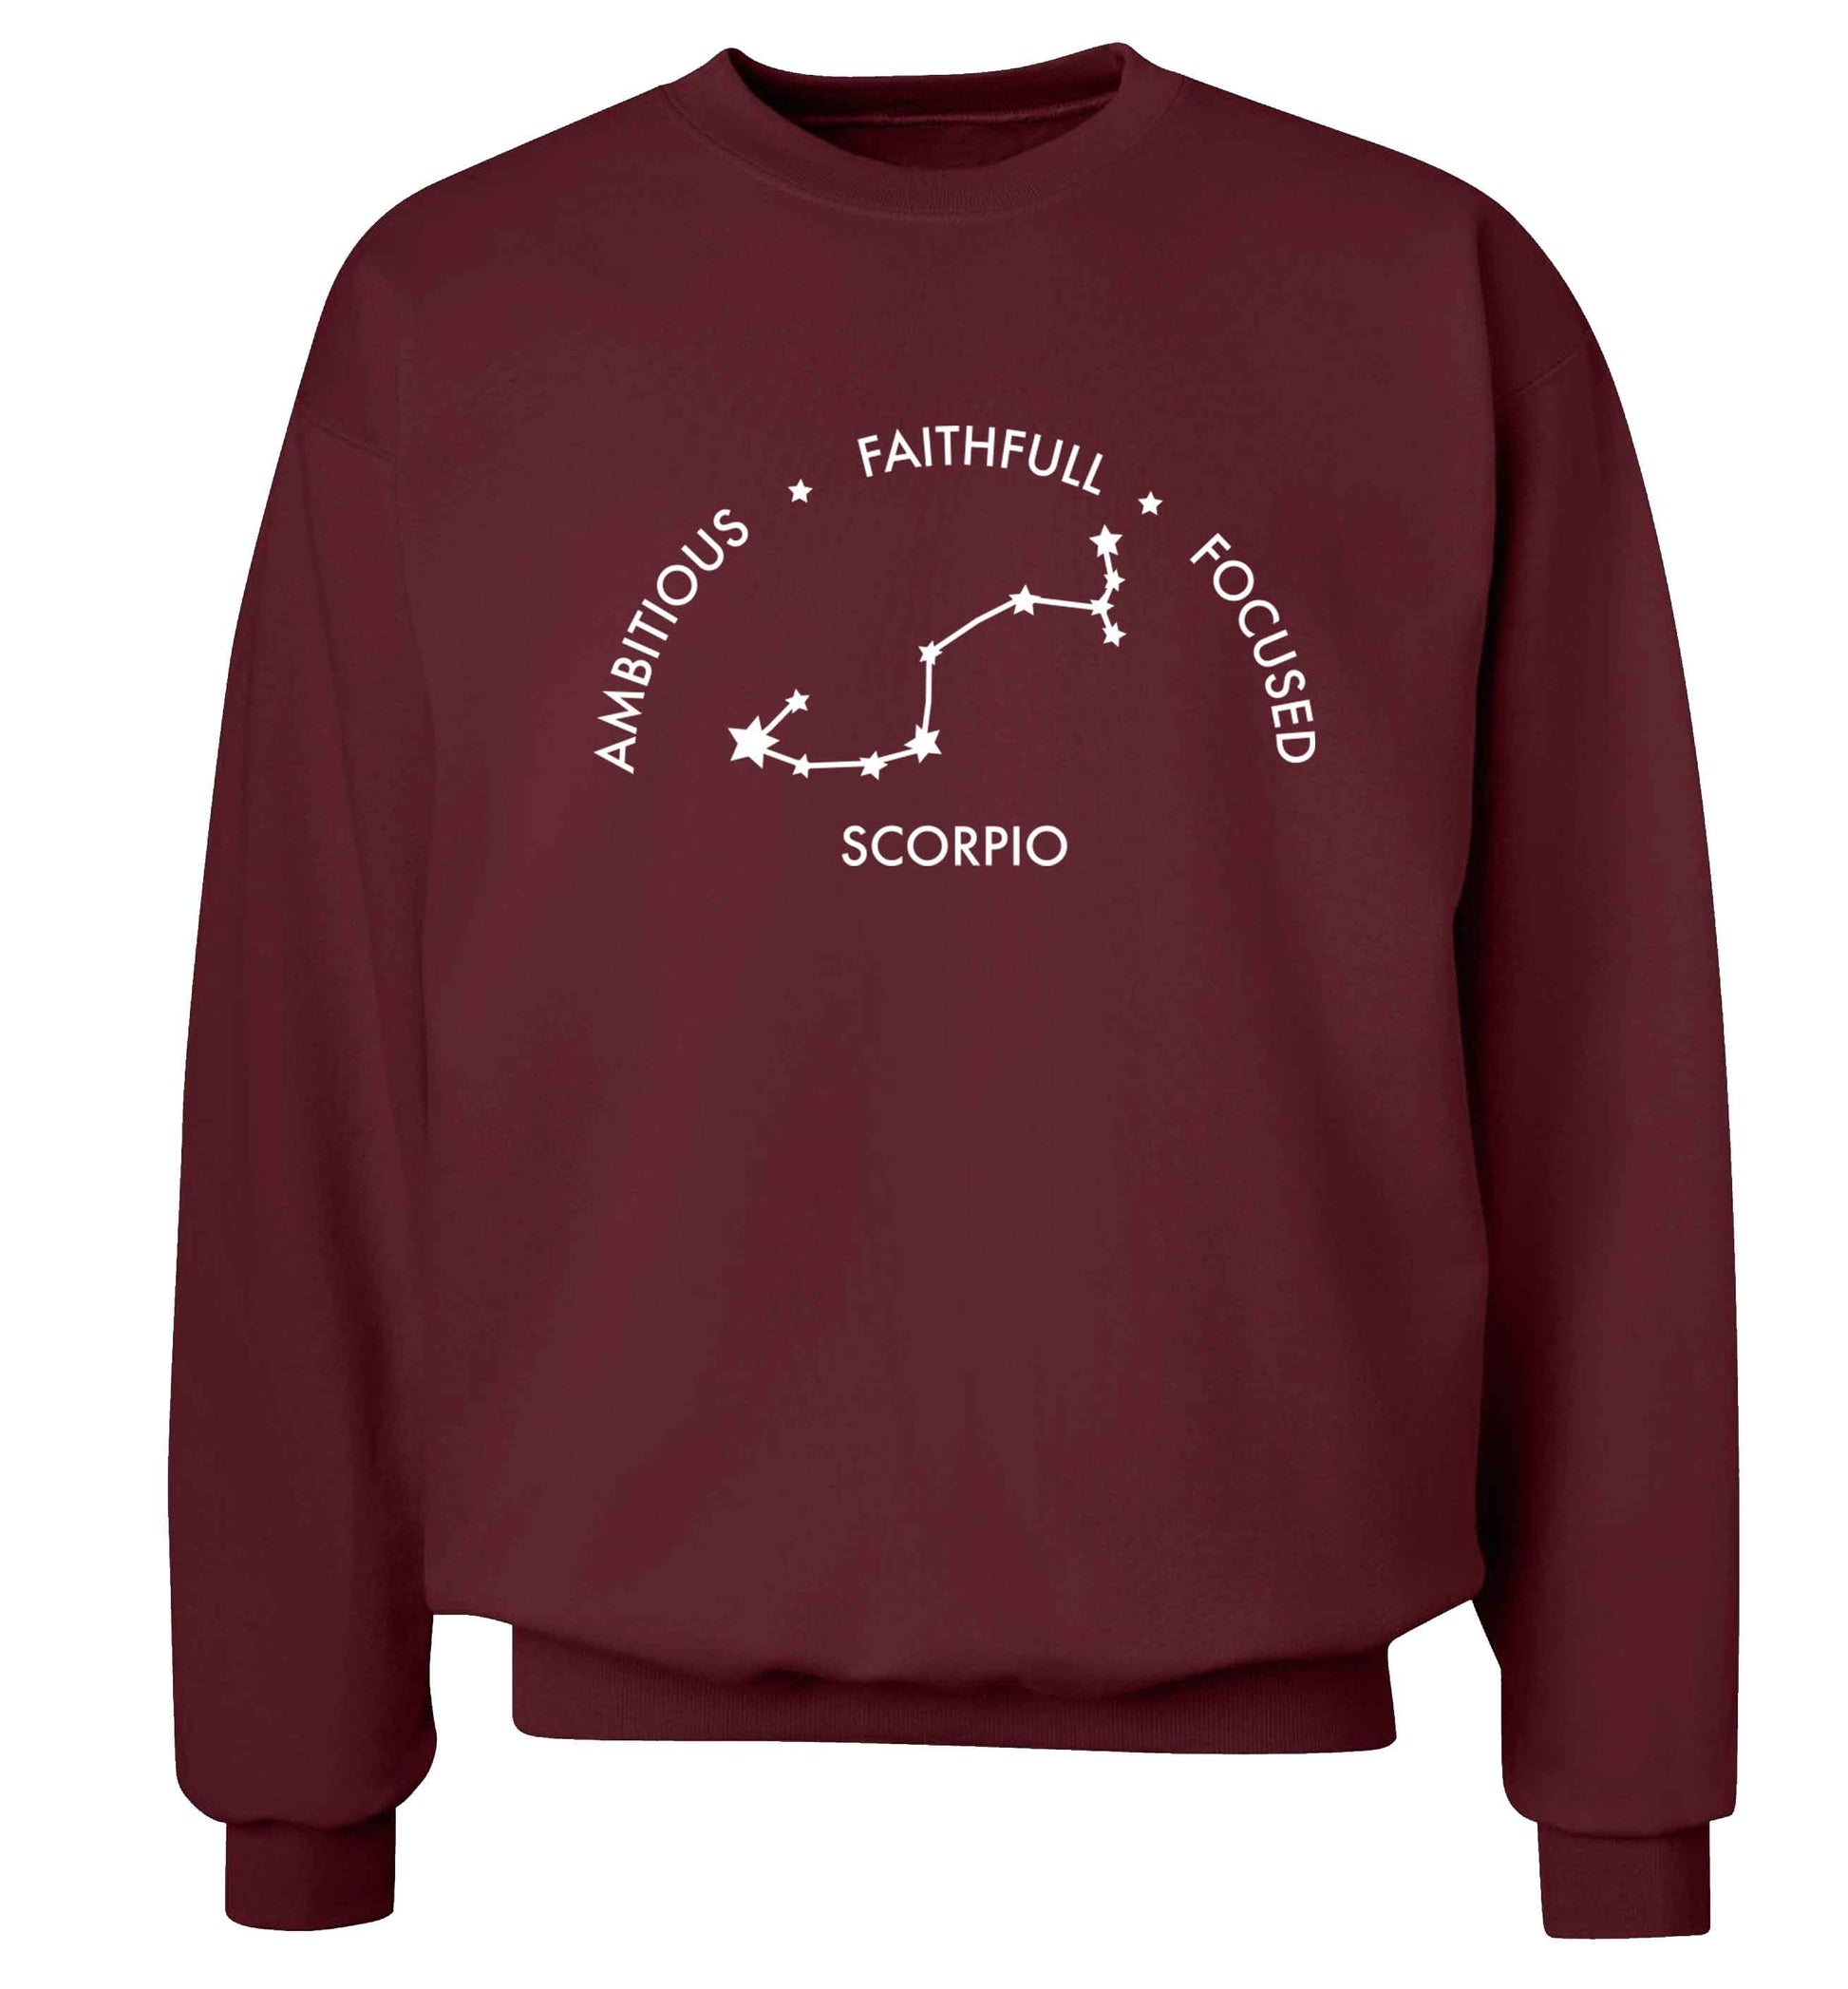 Scorpio, ambitious, faithfull, focused Adult's unisex maroon Sweater 2XL